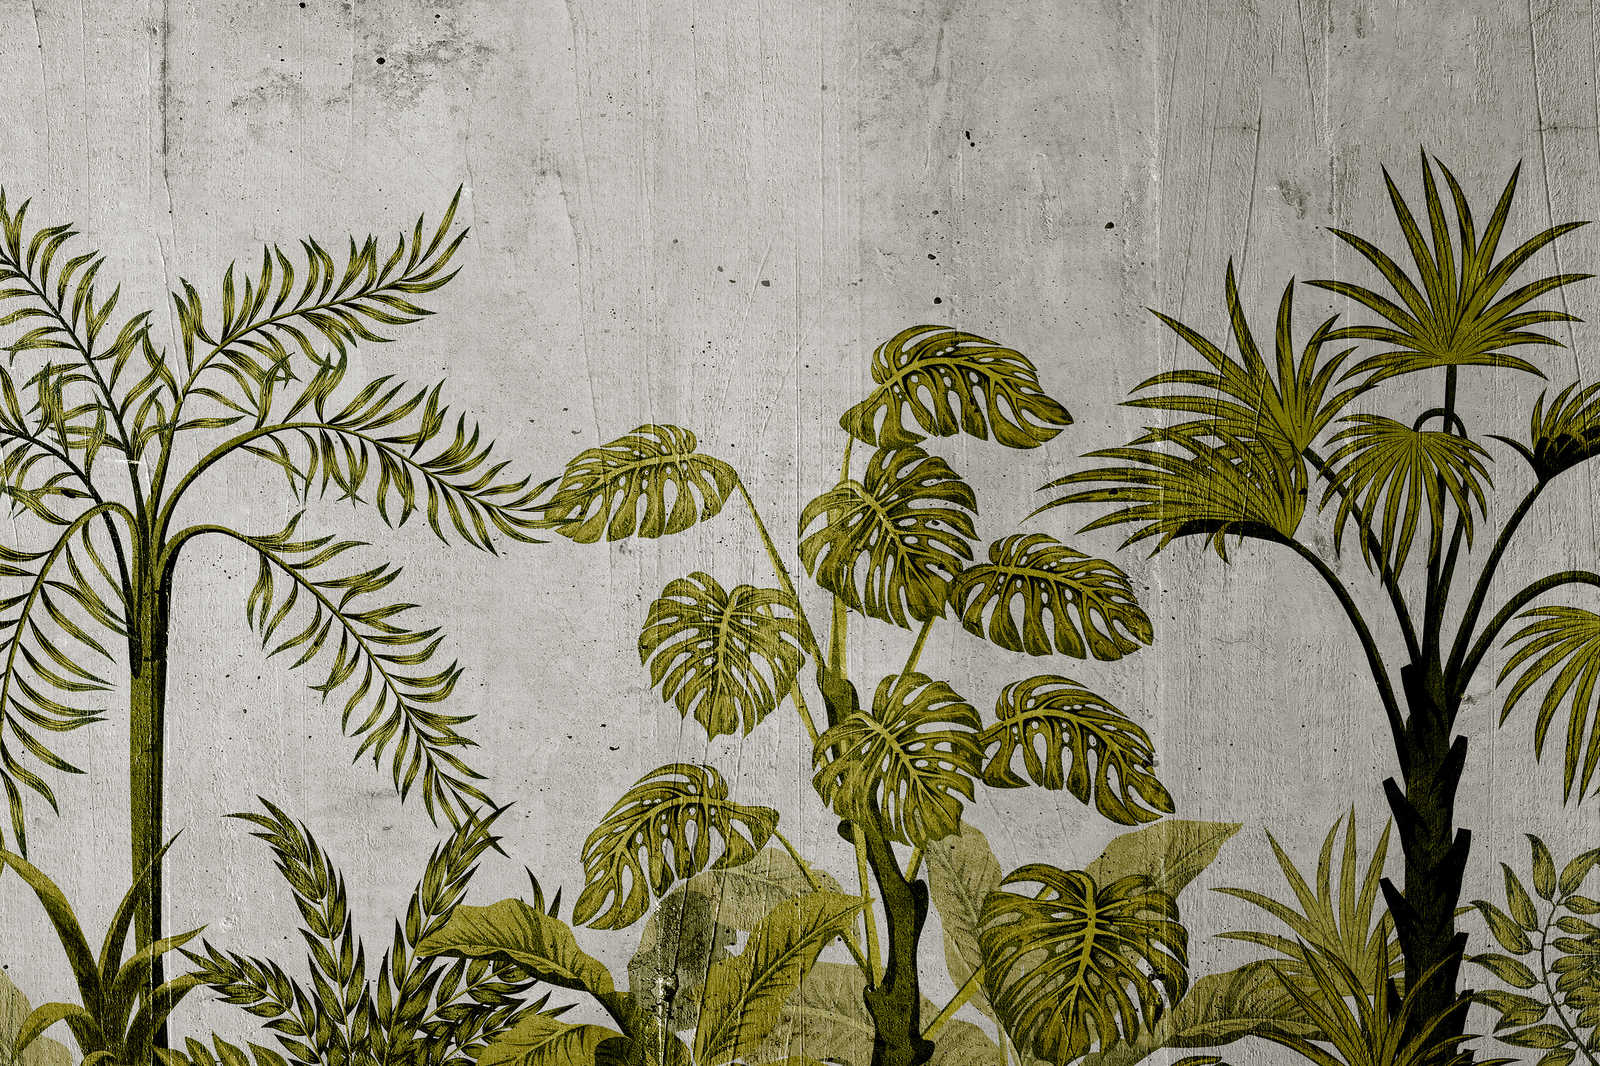             Canvas schilderij met jungle motief op betonnen achtergrond - 0,90 m x 0,60 m
        